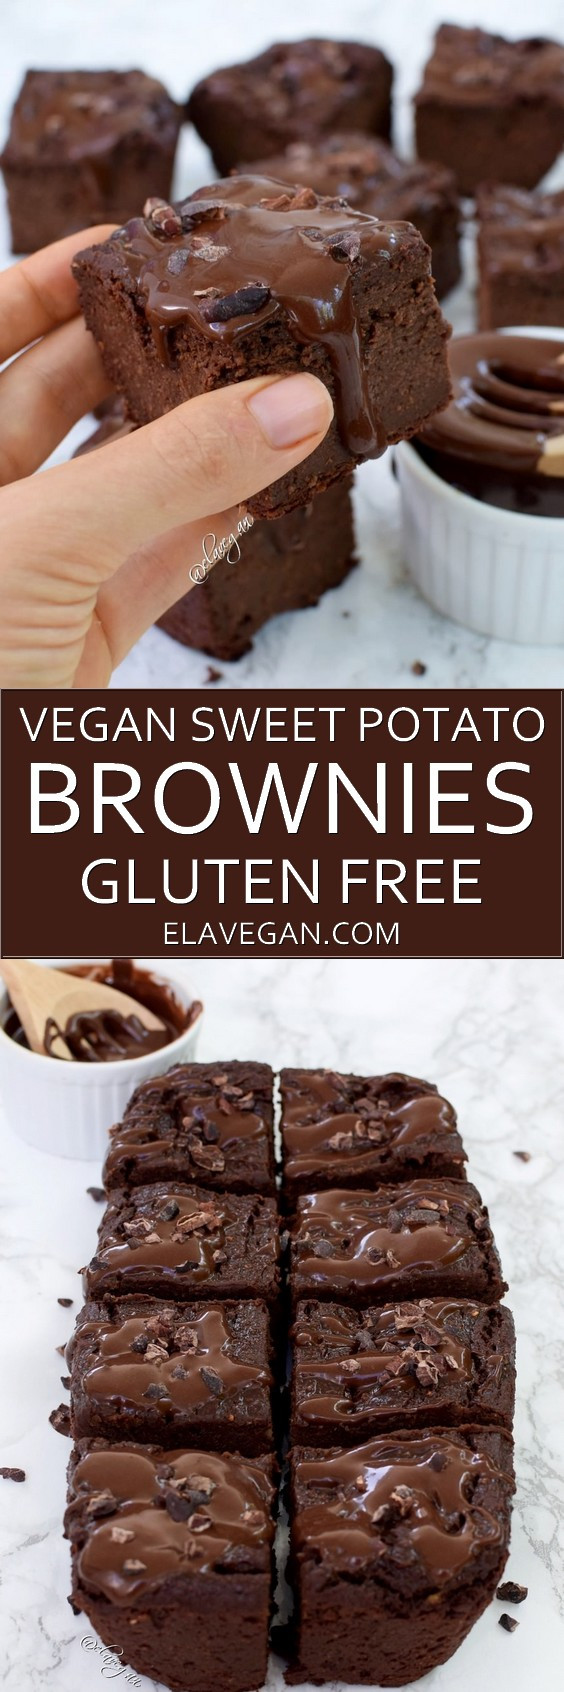 Sweet Potato Brownies Gluten Free
 Vegan sweet potato brownies